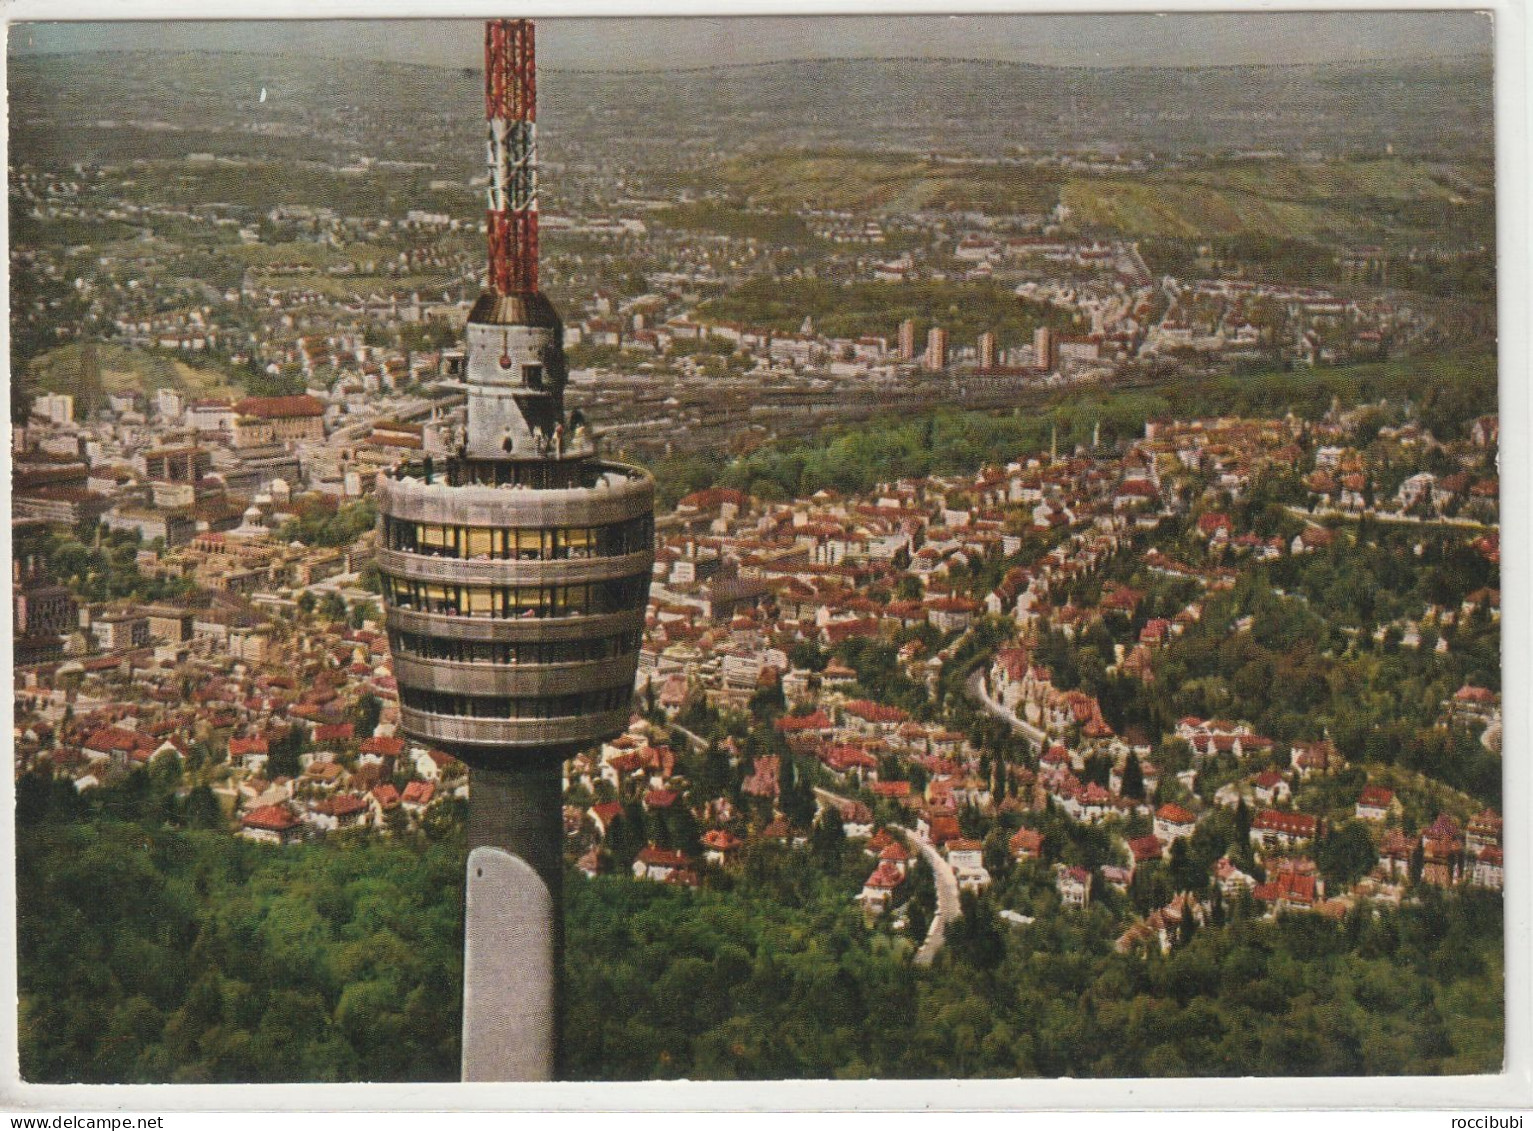 Stuttgart, Fernsehturm, Baden-Württemberg - Stuttgart